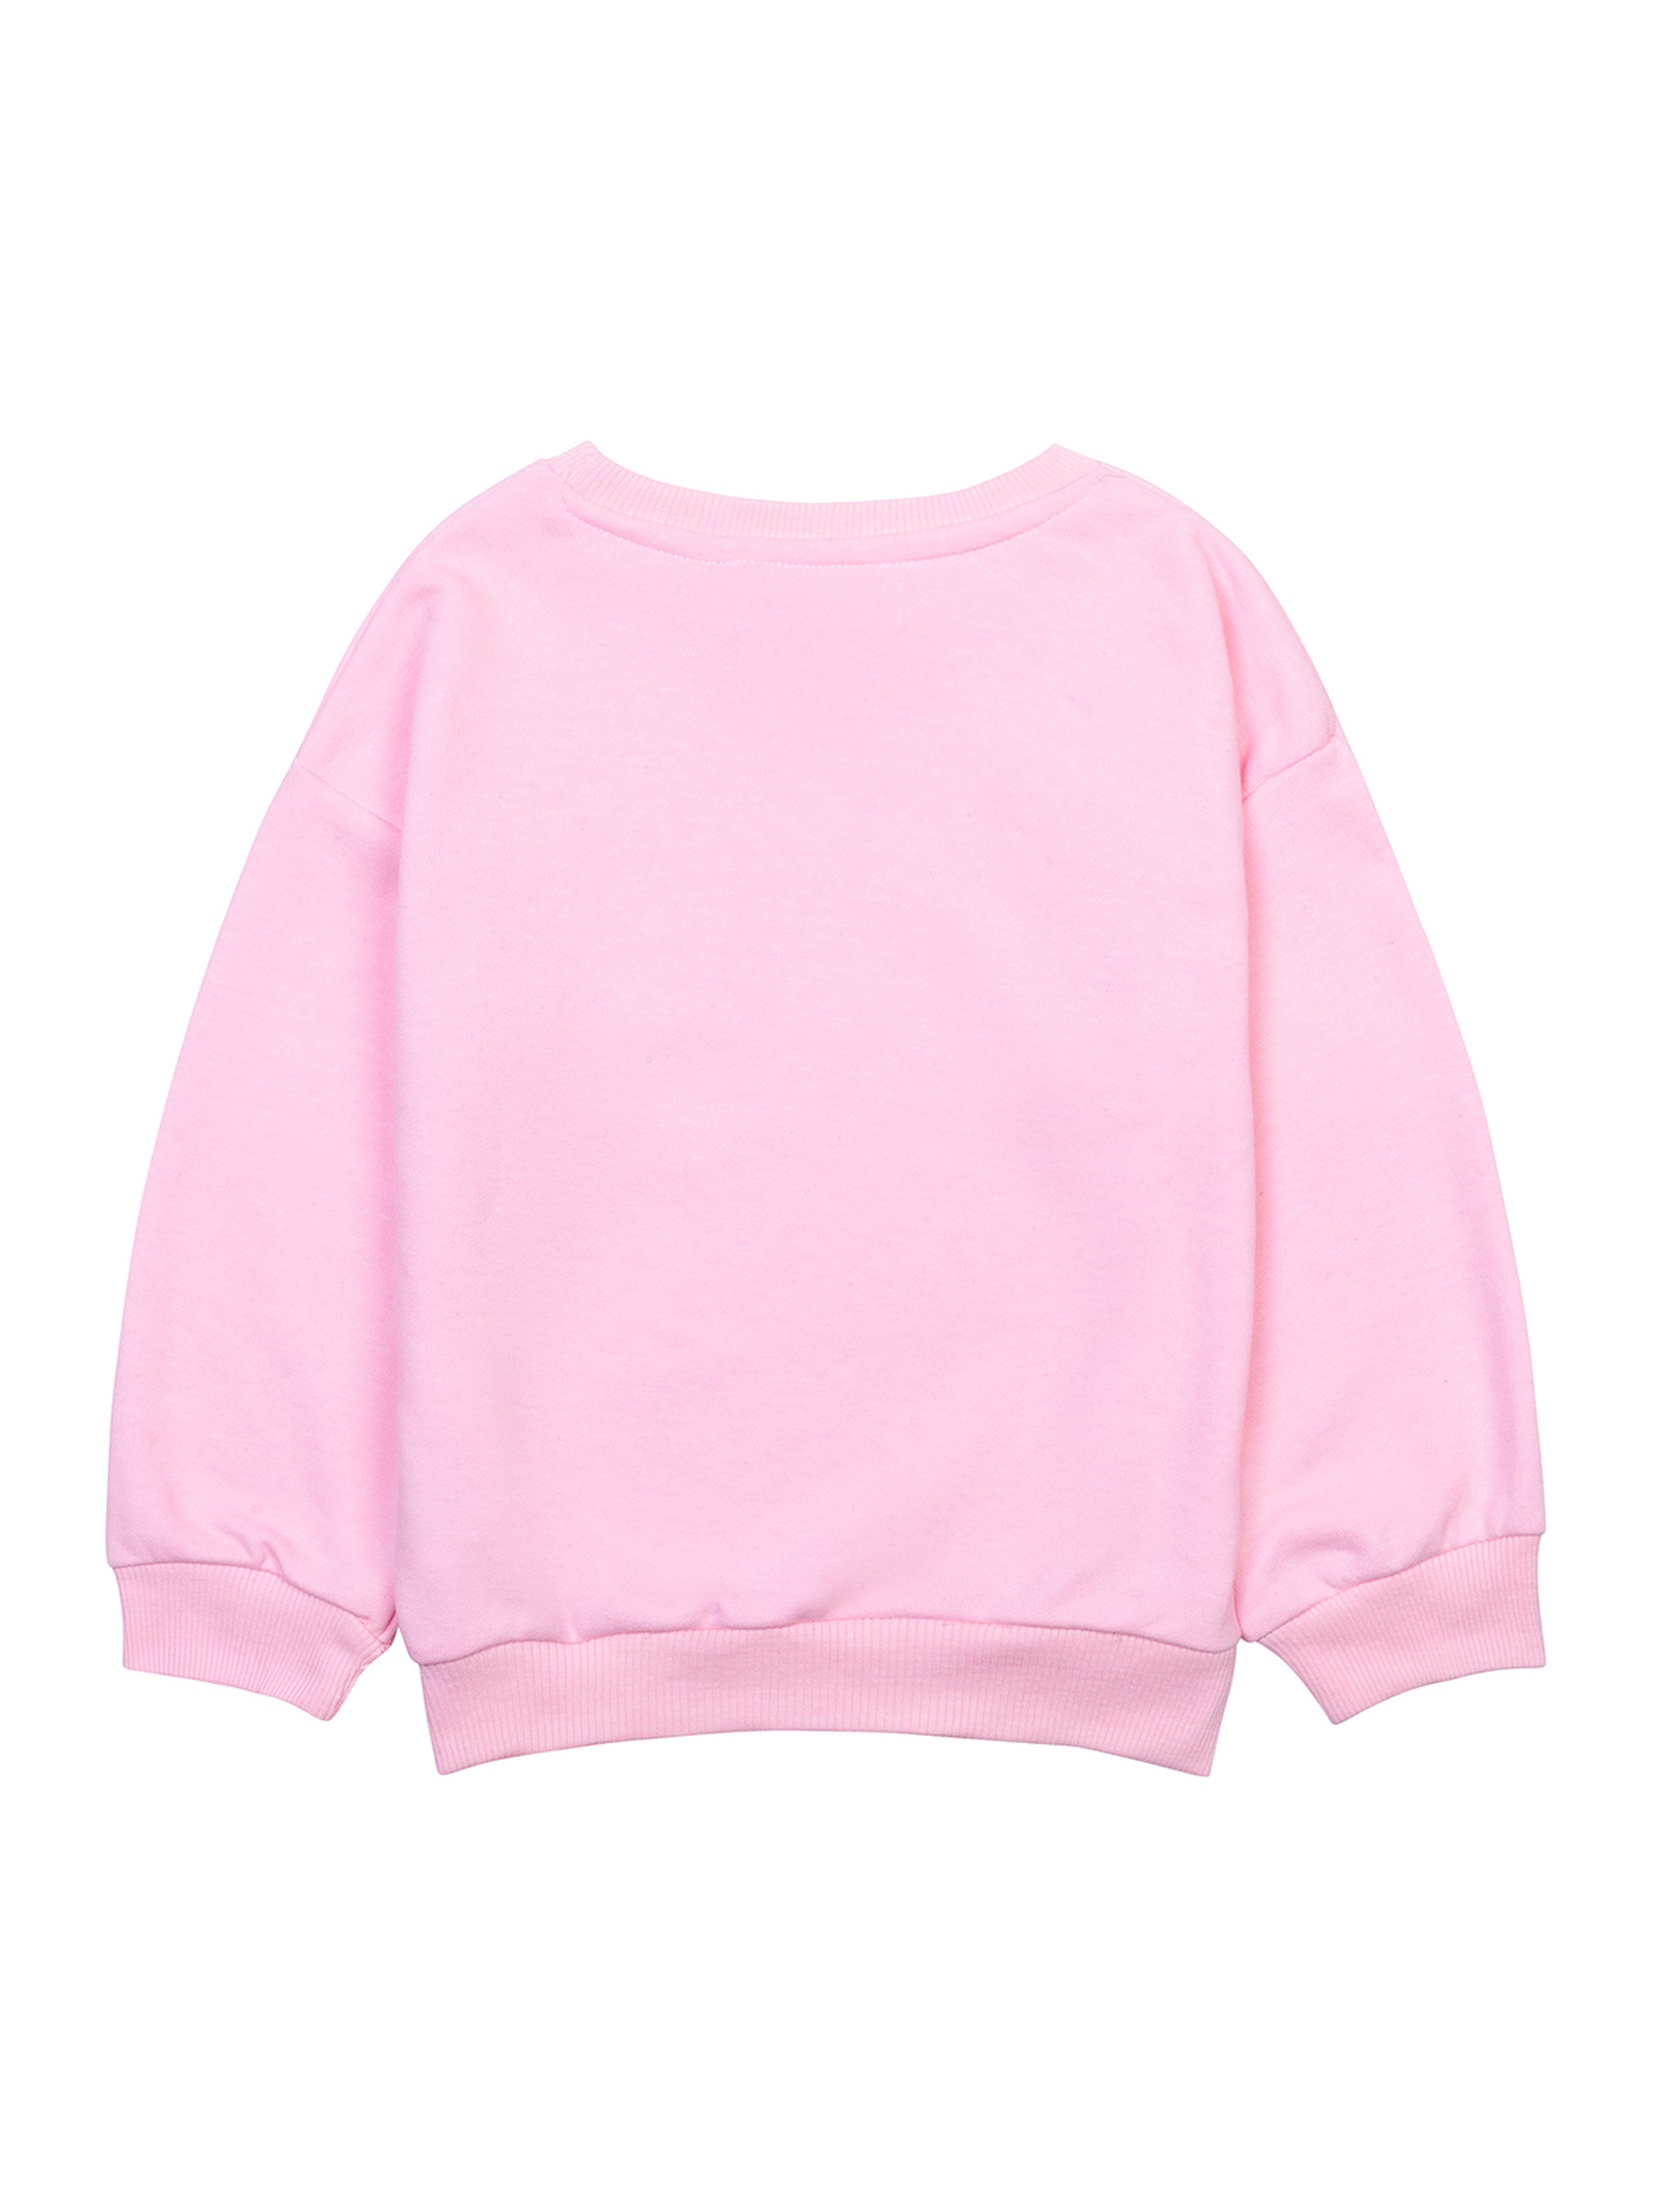 Różowa bluza dziewczęca nierozpinana z arbuzem